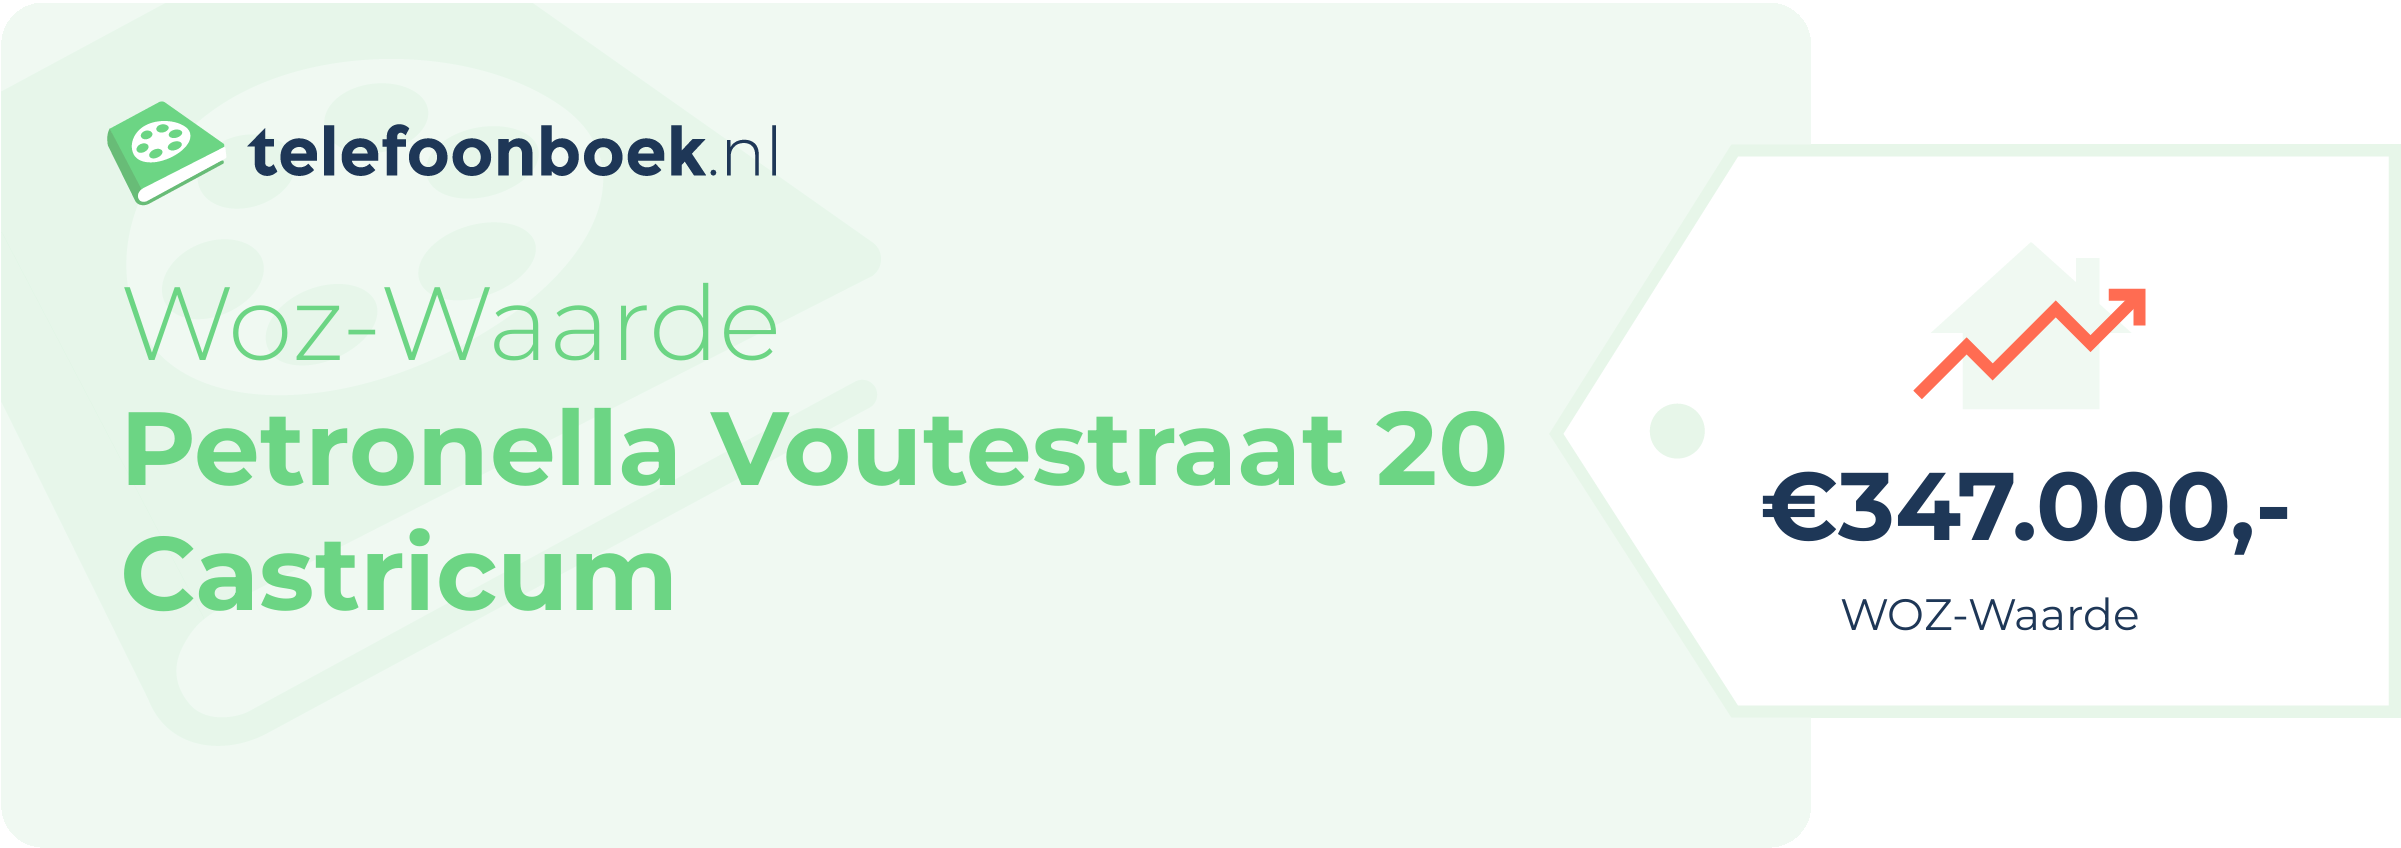 WOZ-waarde Petronella Voutestraat 20 Castricum